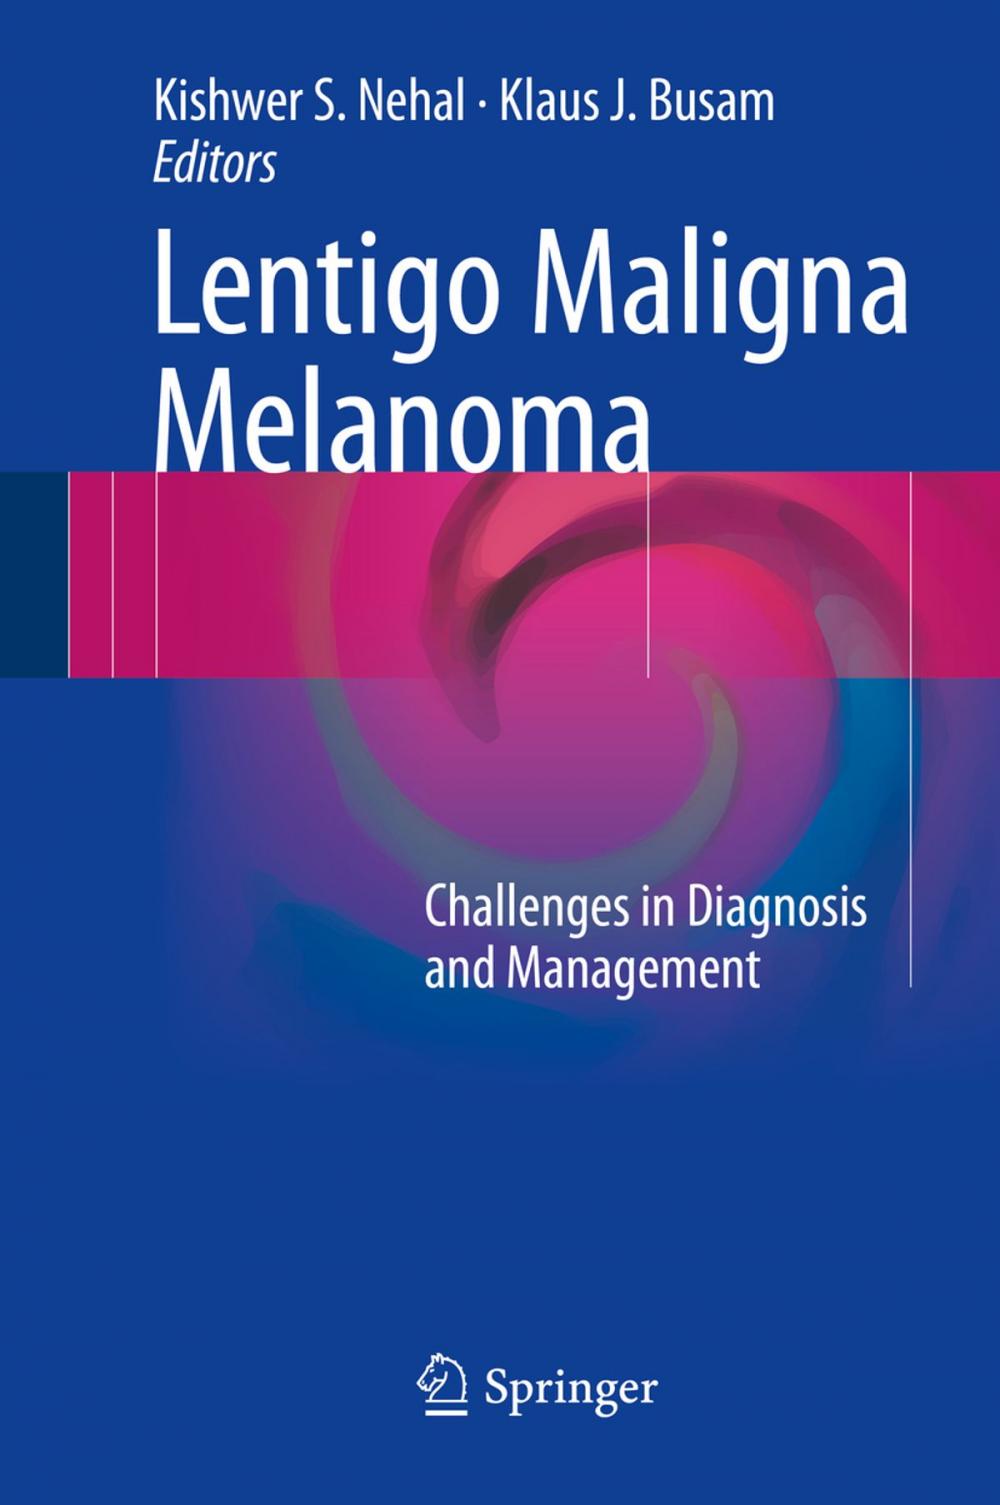 Big bigCover of Lentigo Maligna Melanoma